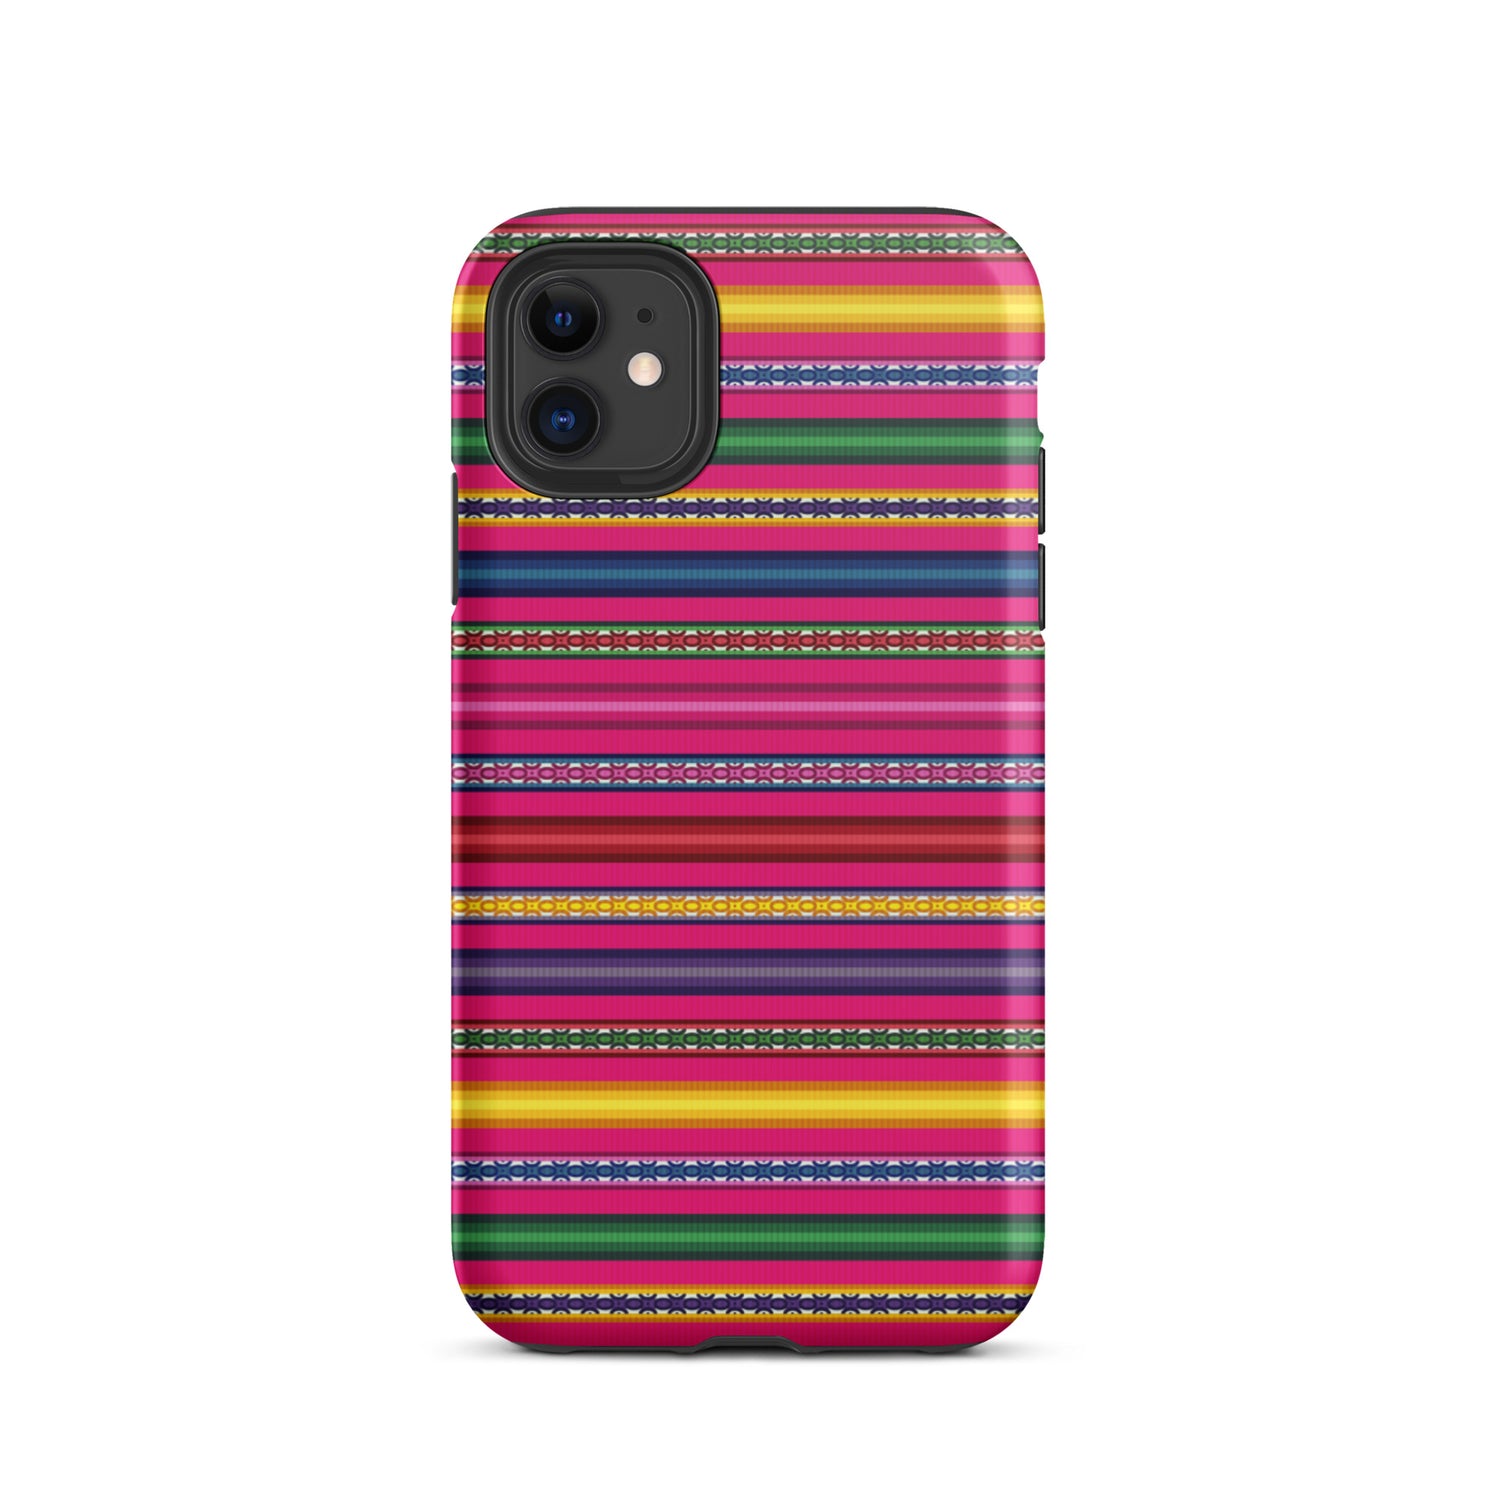 Peruvian Tough iPhone 11 case